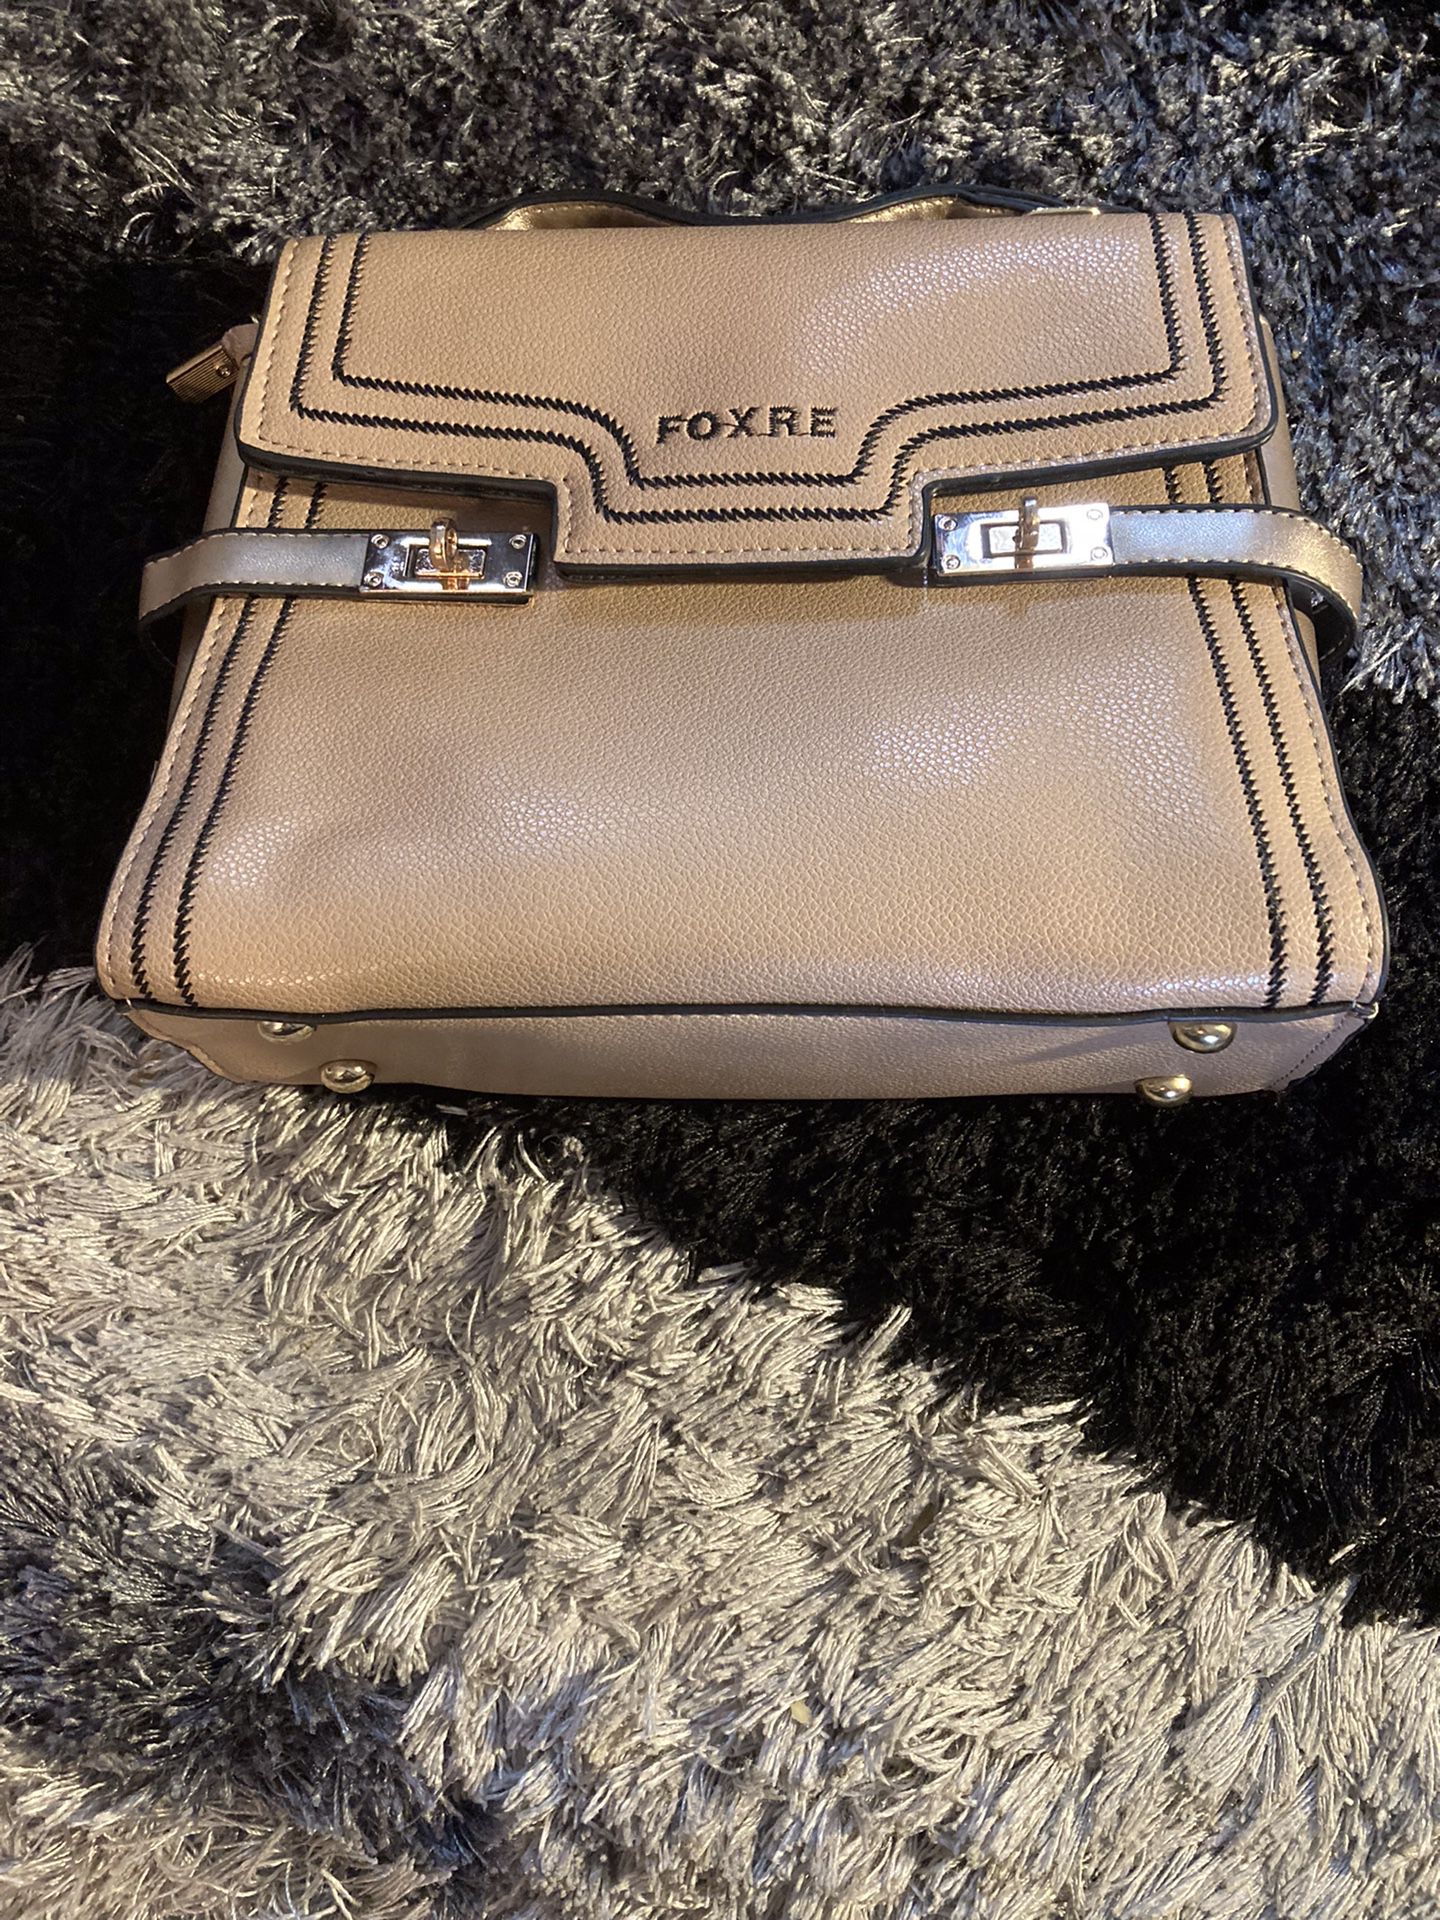 Foxre Shoulder Bag/Handbag